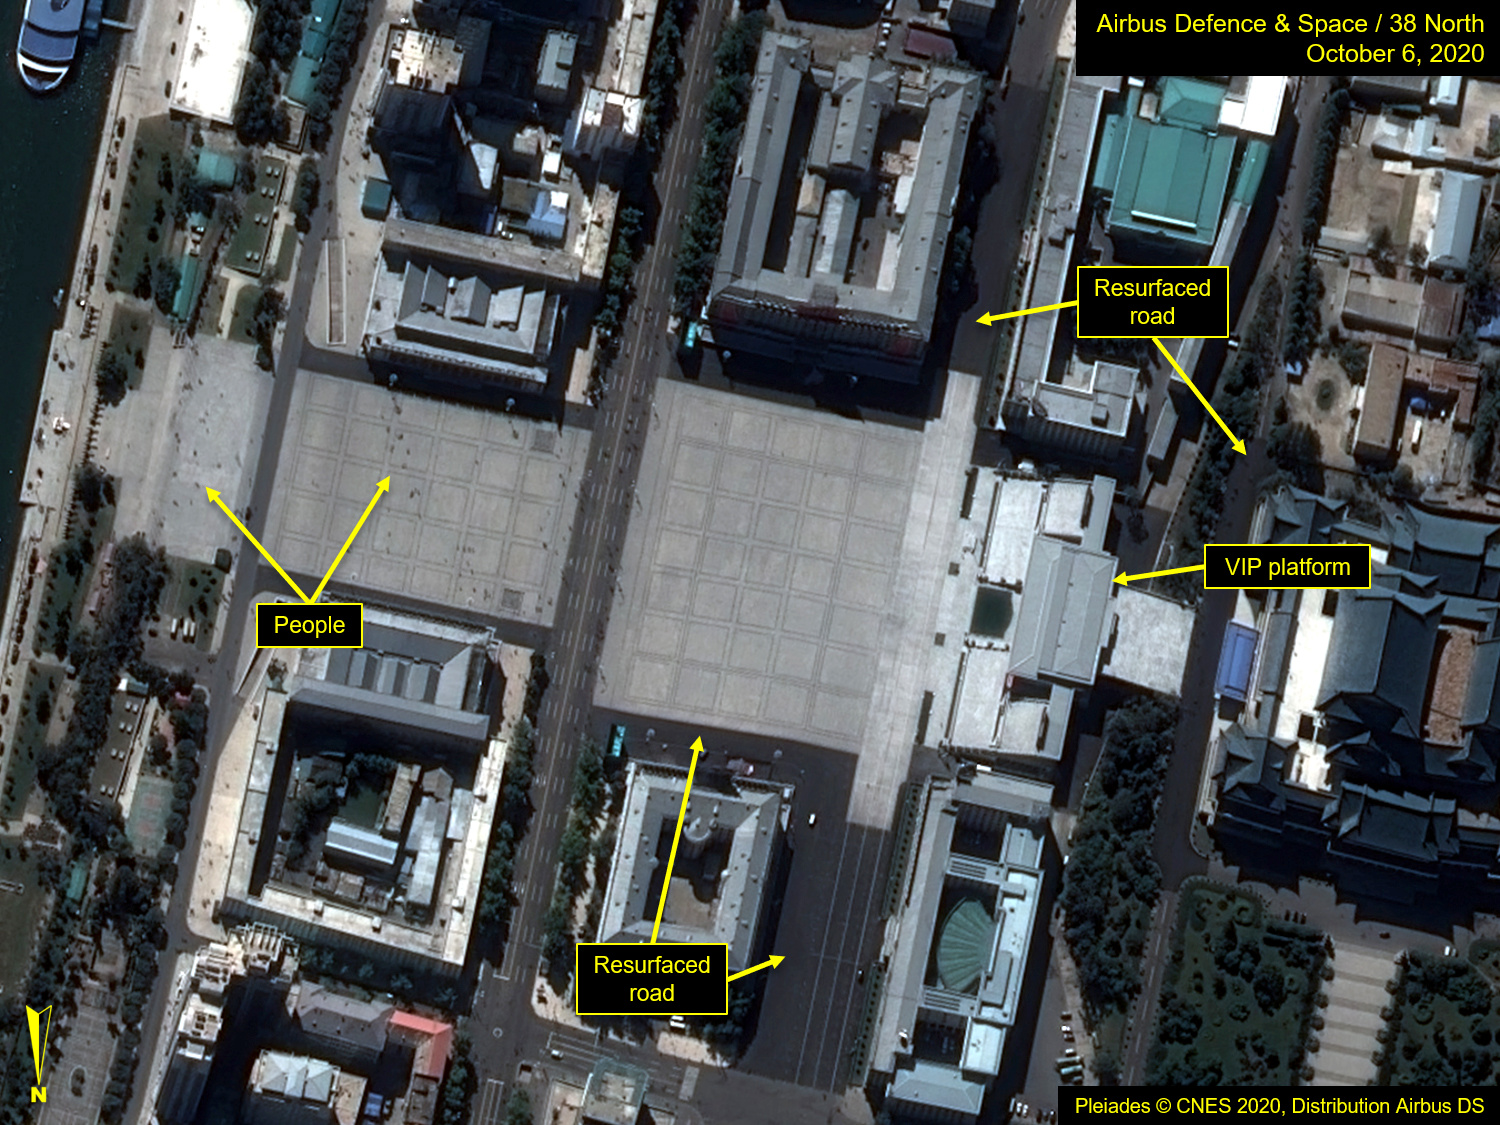 La foto satelital muestra la Plaza Kim Il Sung antes del desfile (Airbus Defence & Space/38 North/Pleiades © CNES 2020 via REUTERS)